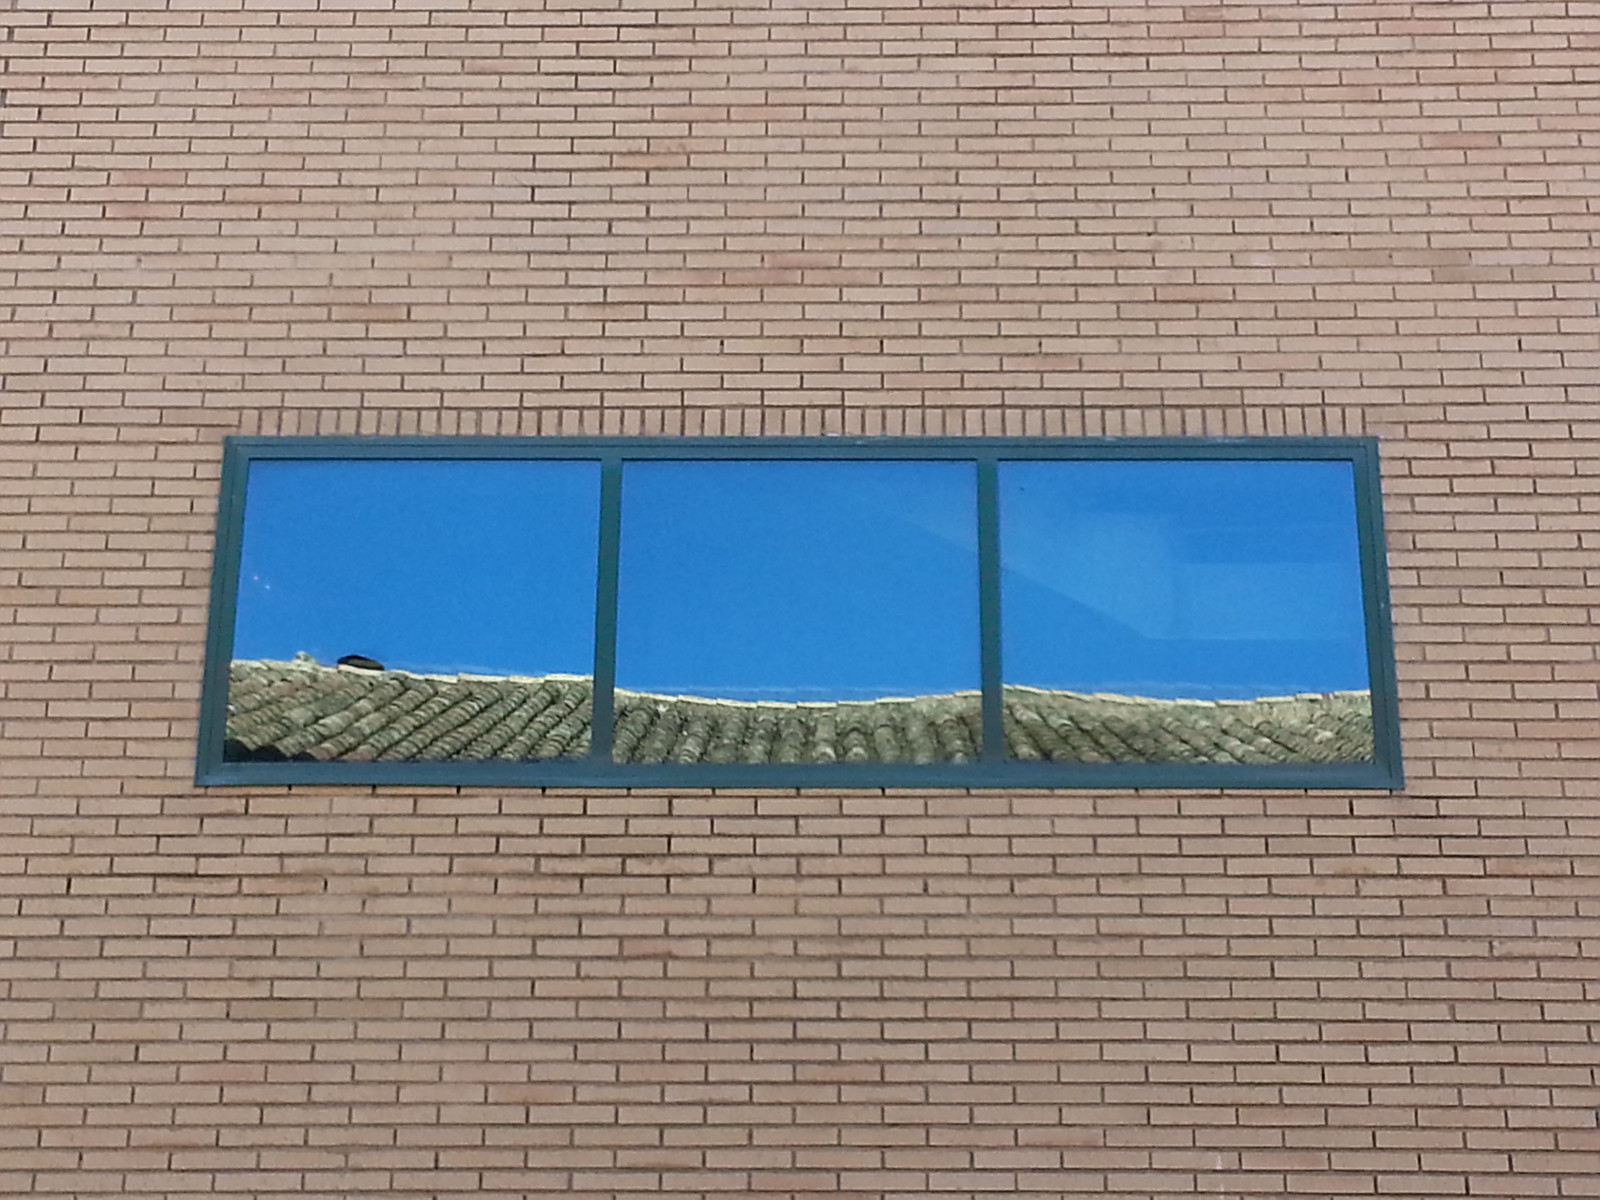 Yellow Brick Wall - window, reflections